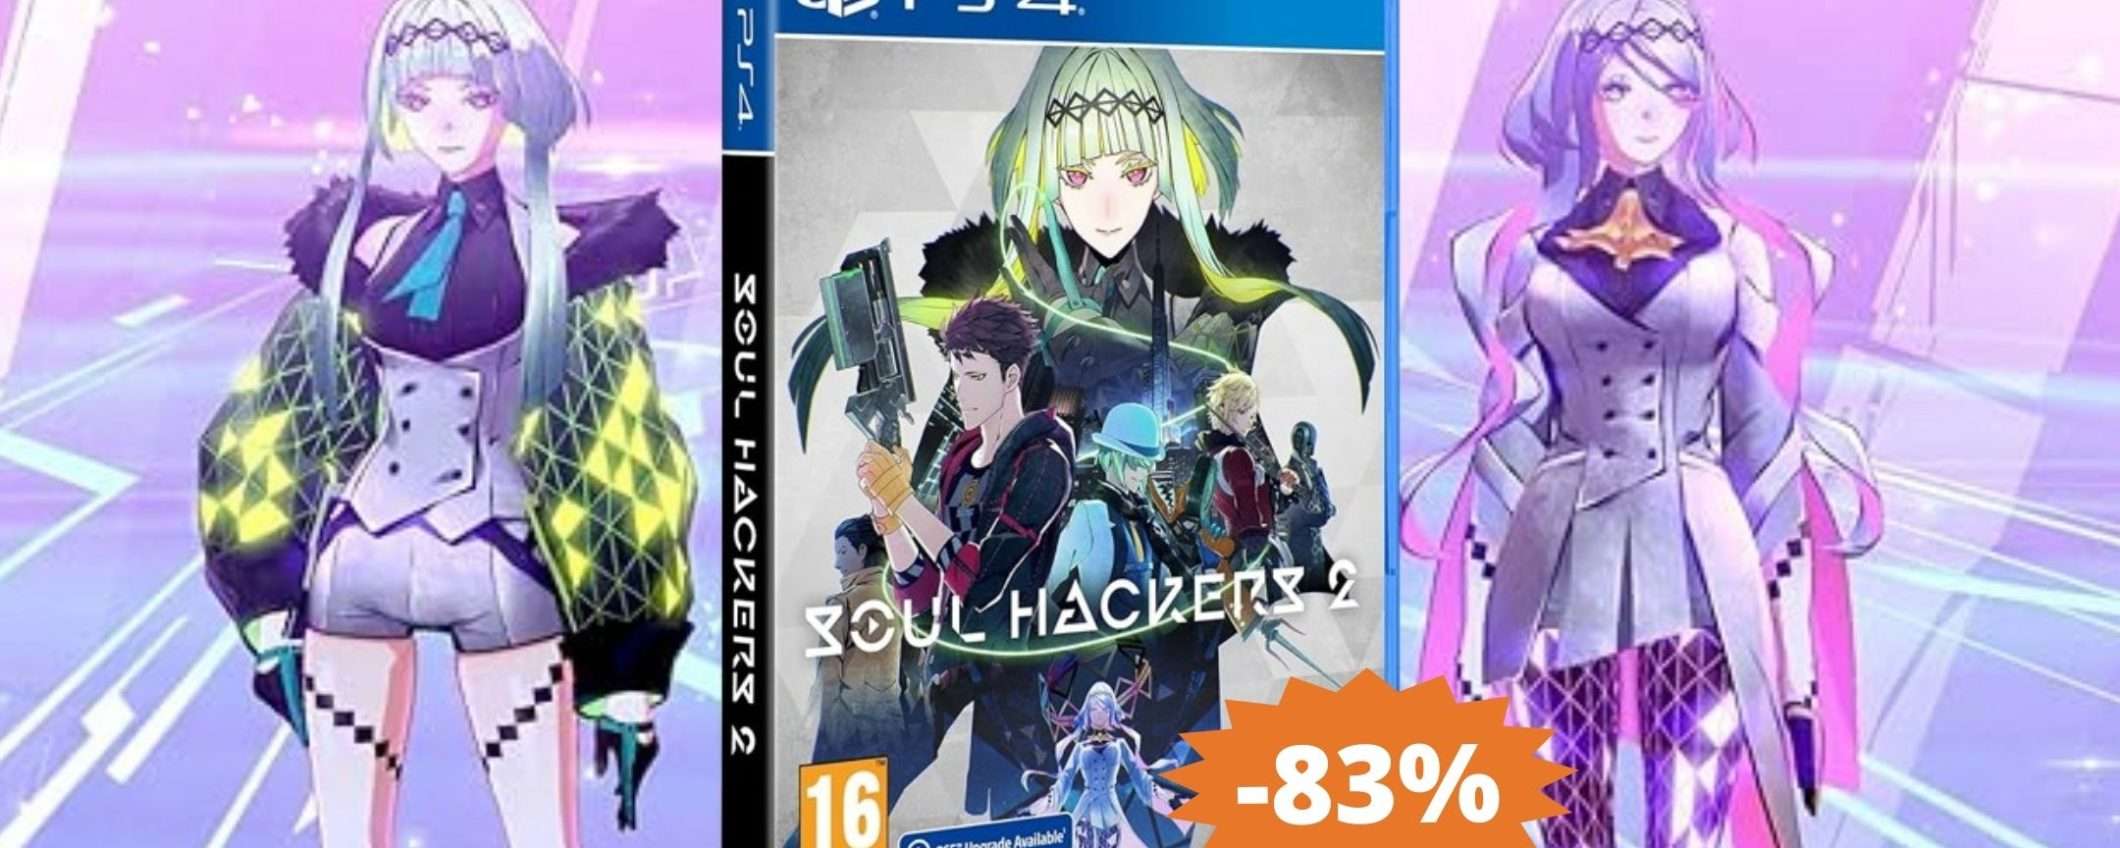 Soul Hackers 2 per PS4: CROLLO del prezzo su Amazon (-83%)